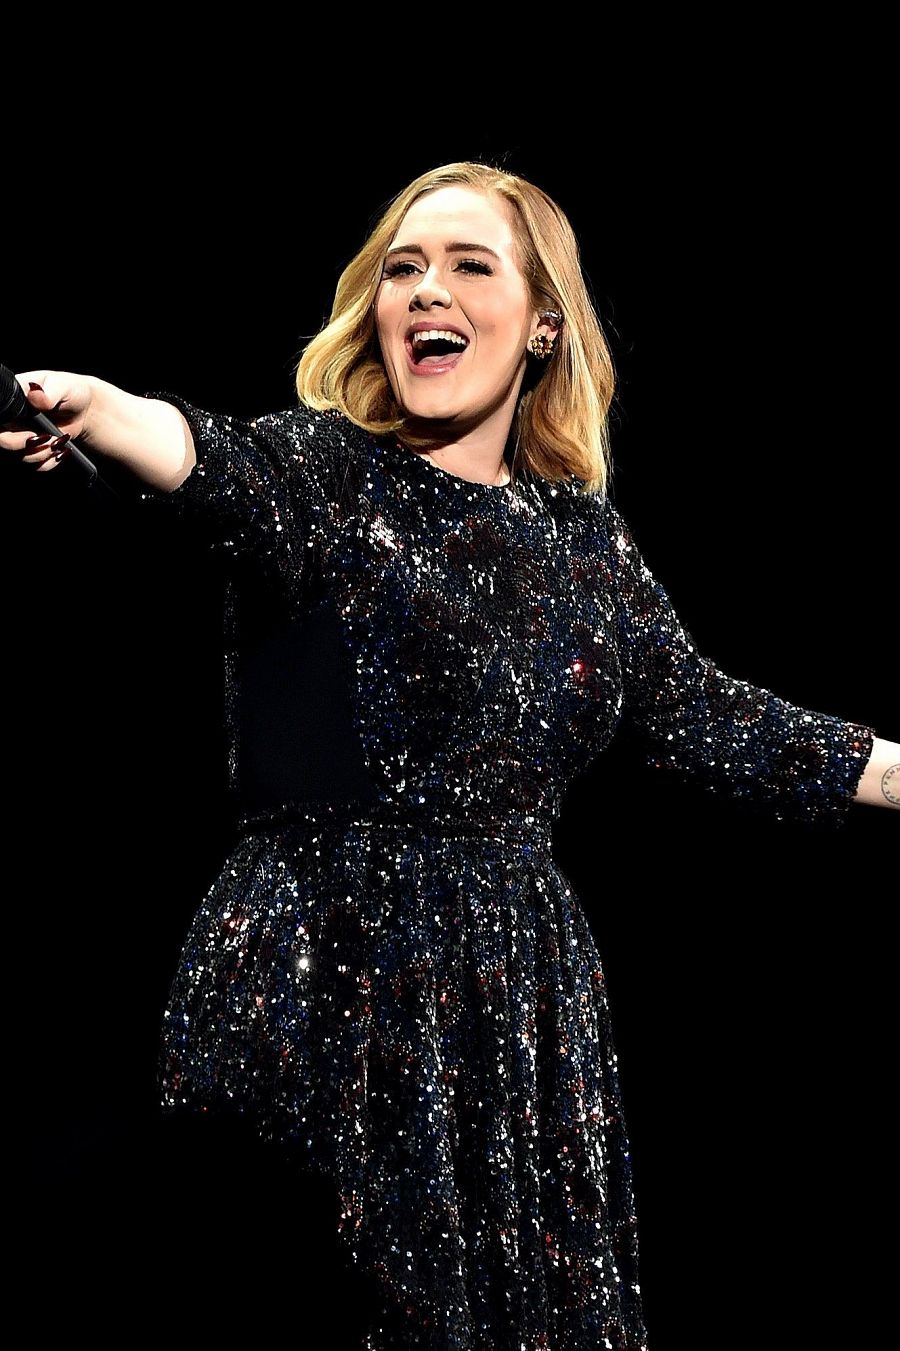  La cantante Adele, una de las mejor pagadas de su tiempo